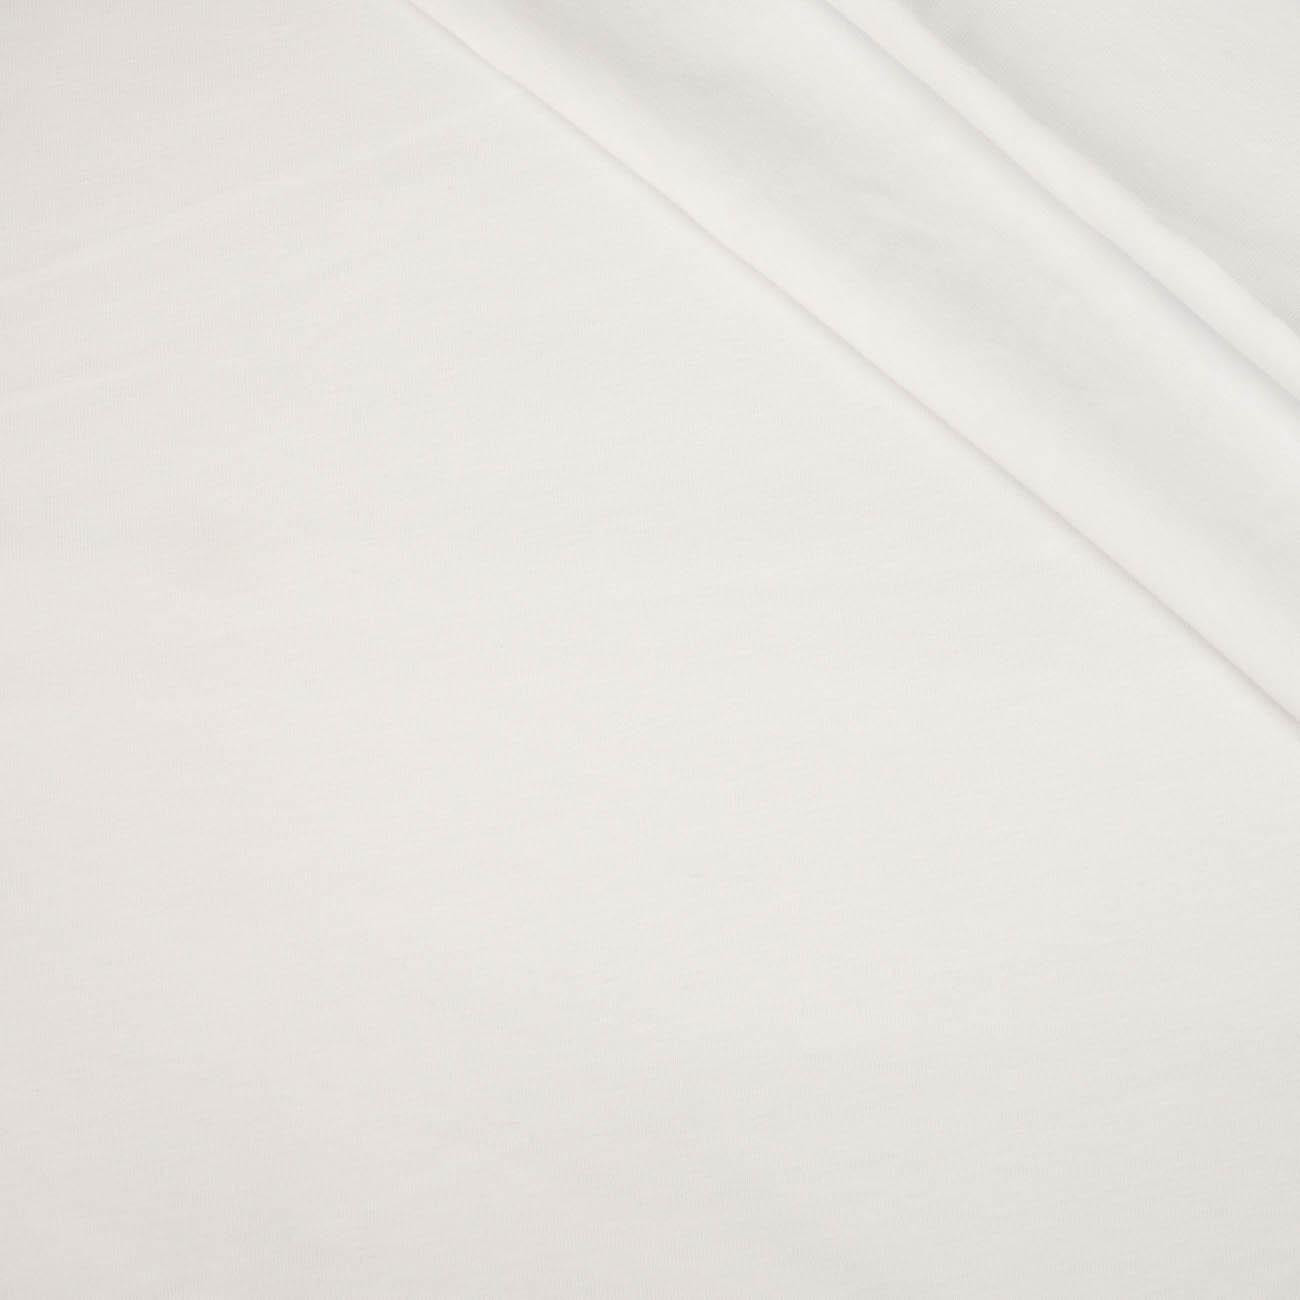 WHITE - t-shirt with elastan TE210